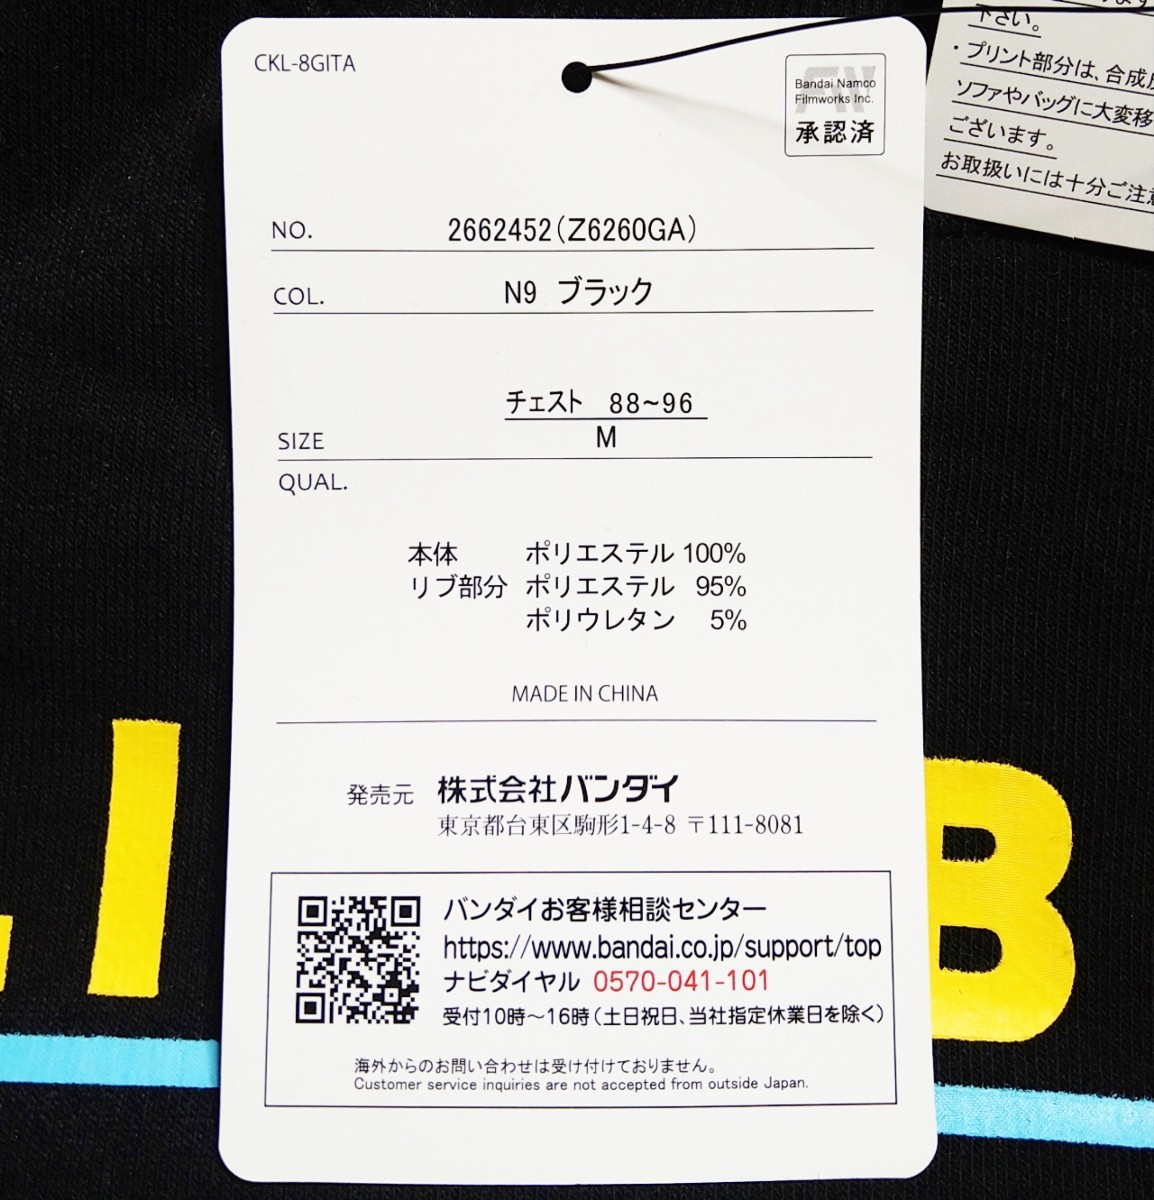  Gintama Elizabeth передний принт обратная сторона ворсистый тянуть over футболка черный мужской M размер 